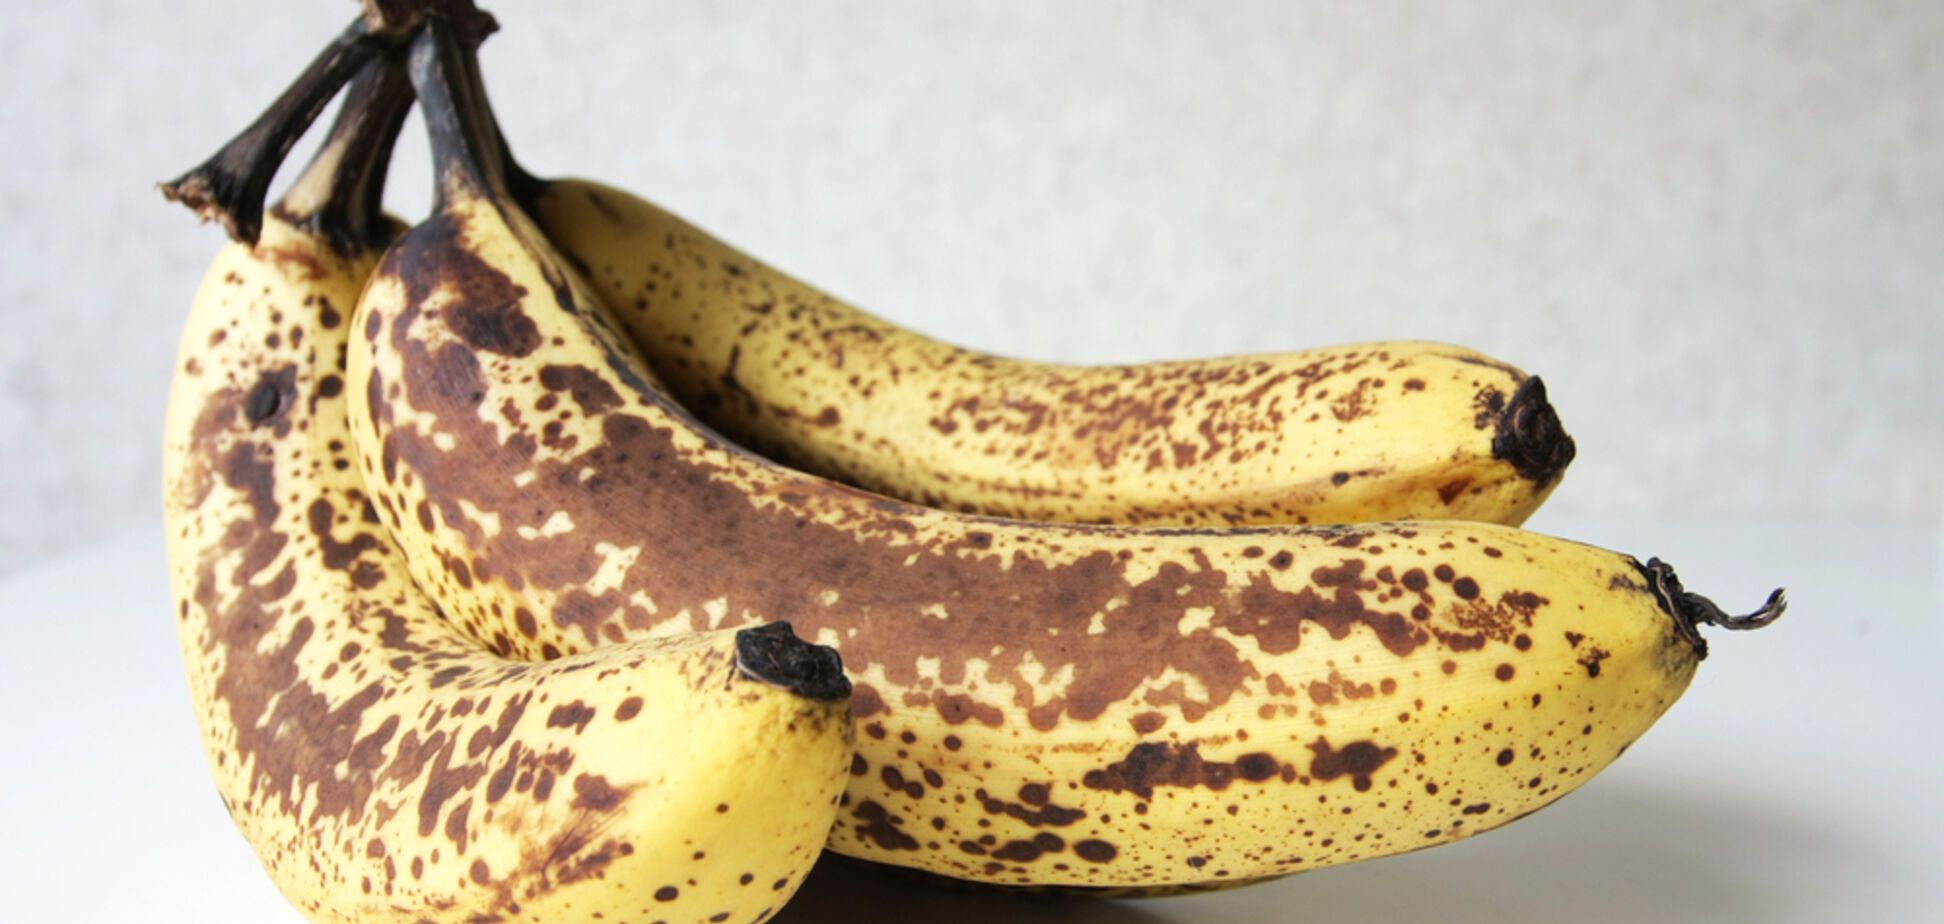 Недопитий чай і переспілі банани: як використовувати прострочені продукти